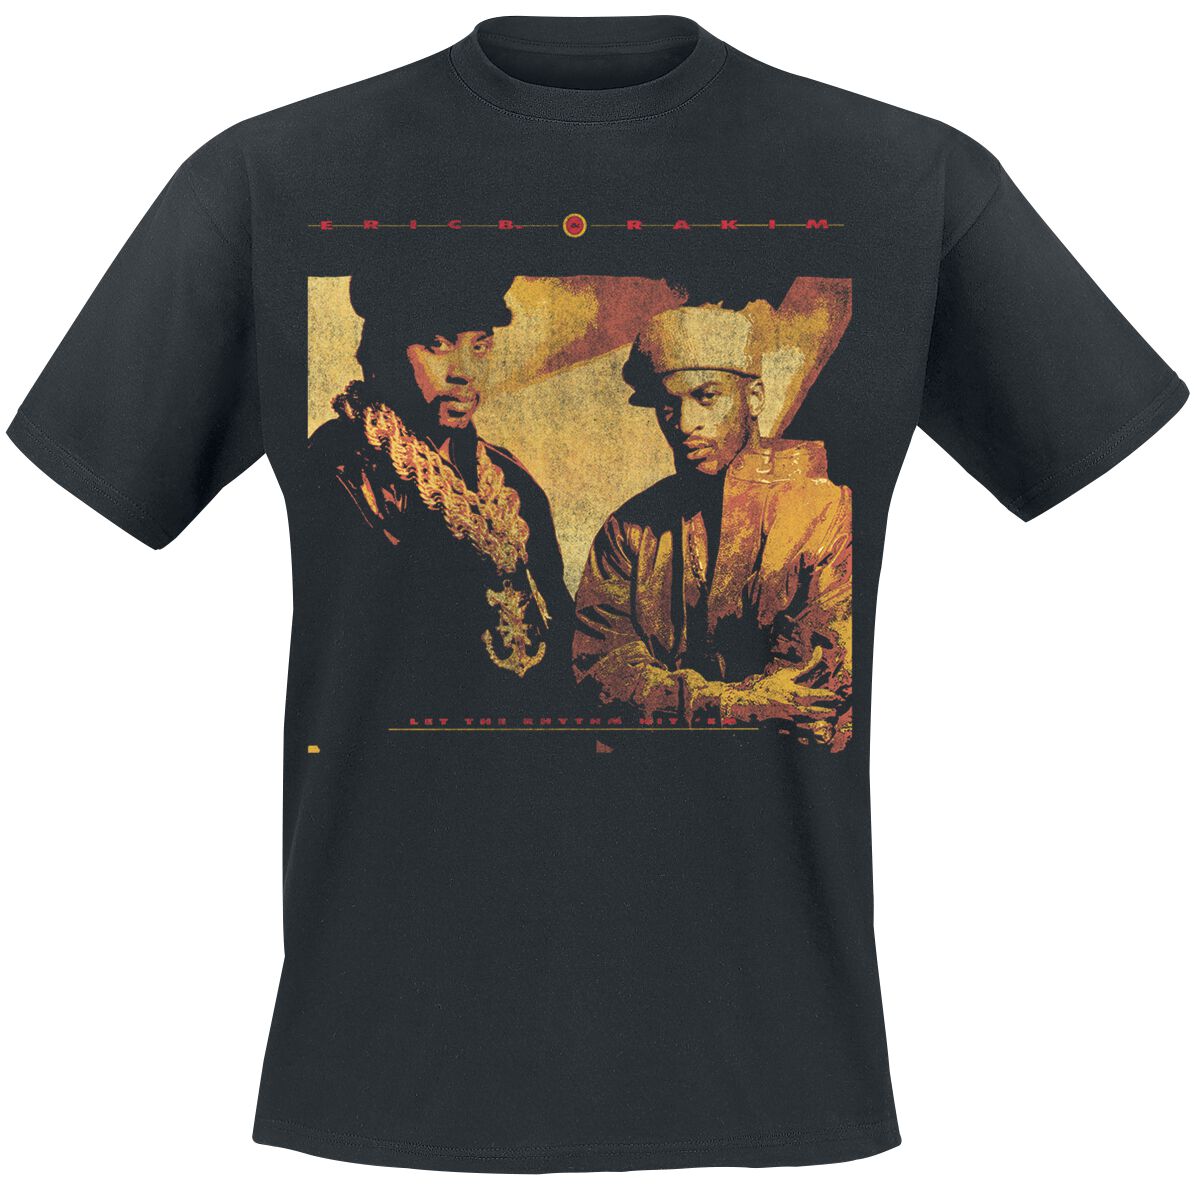 Eric B. & Rakim T-Shirt - Rhythm Hit Em - S bis 3XL - für Männer - Größe M - schwarz  - Lizenziertes Merchandise! von Eric B. & Rakim